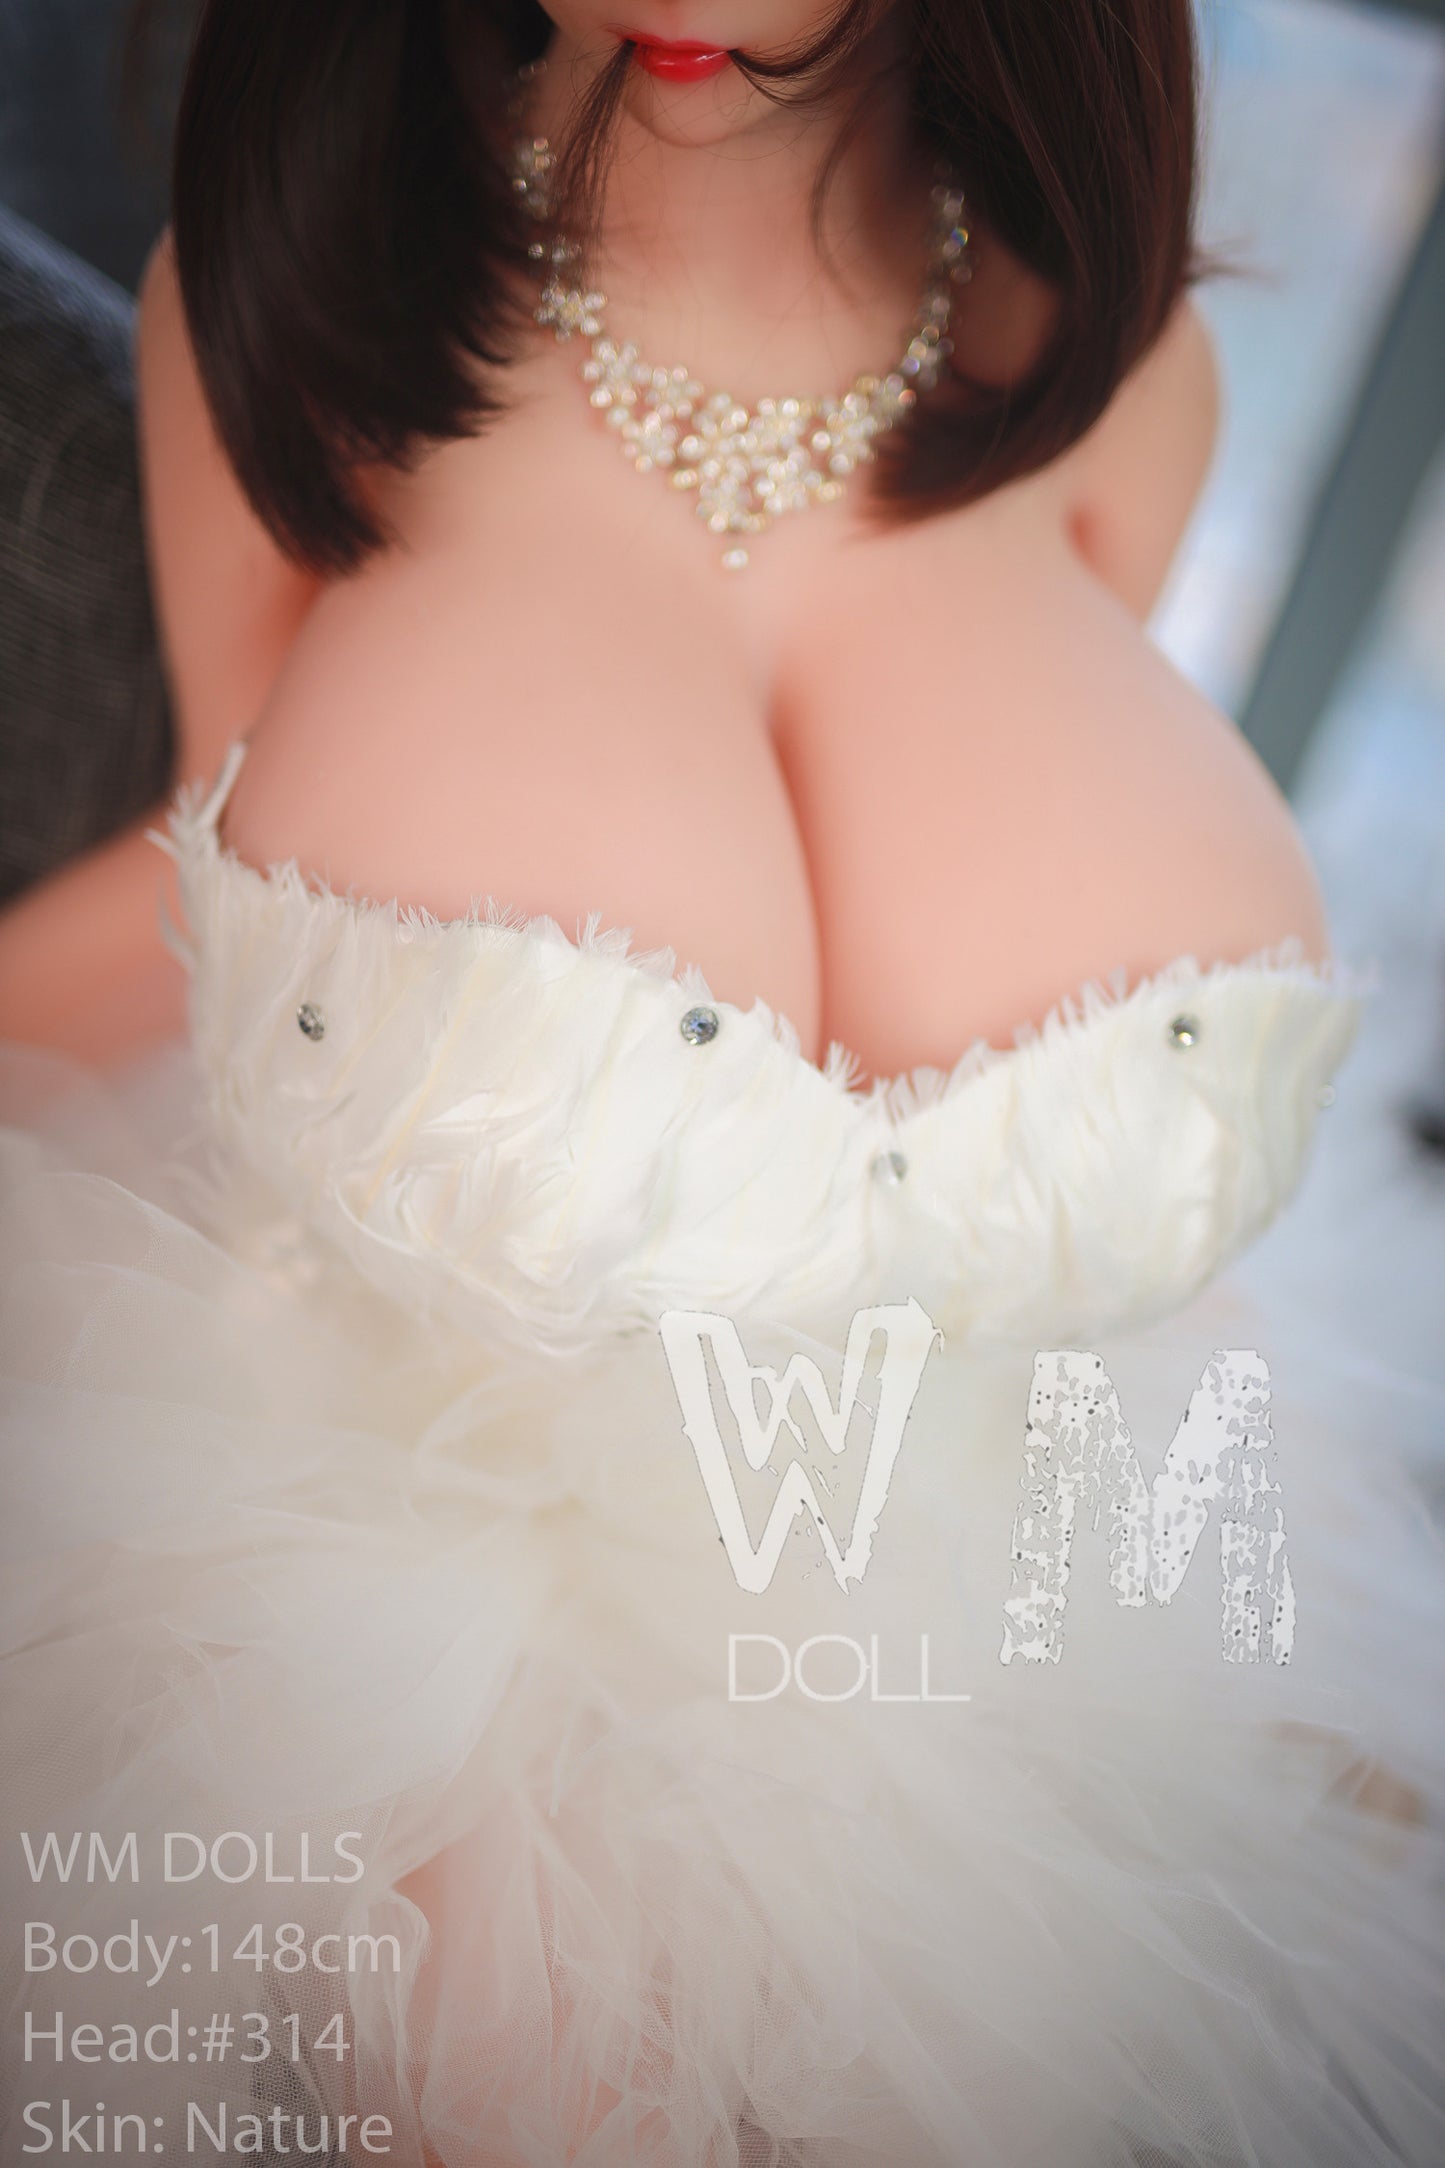 WM Doll 148CM L-cup + 314#